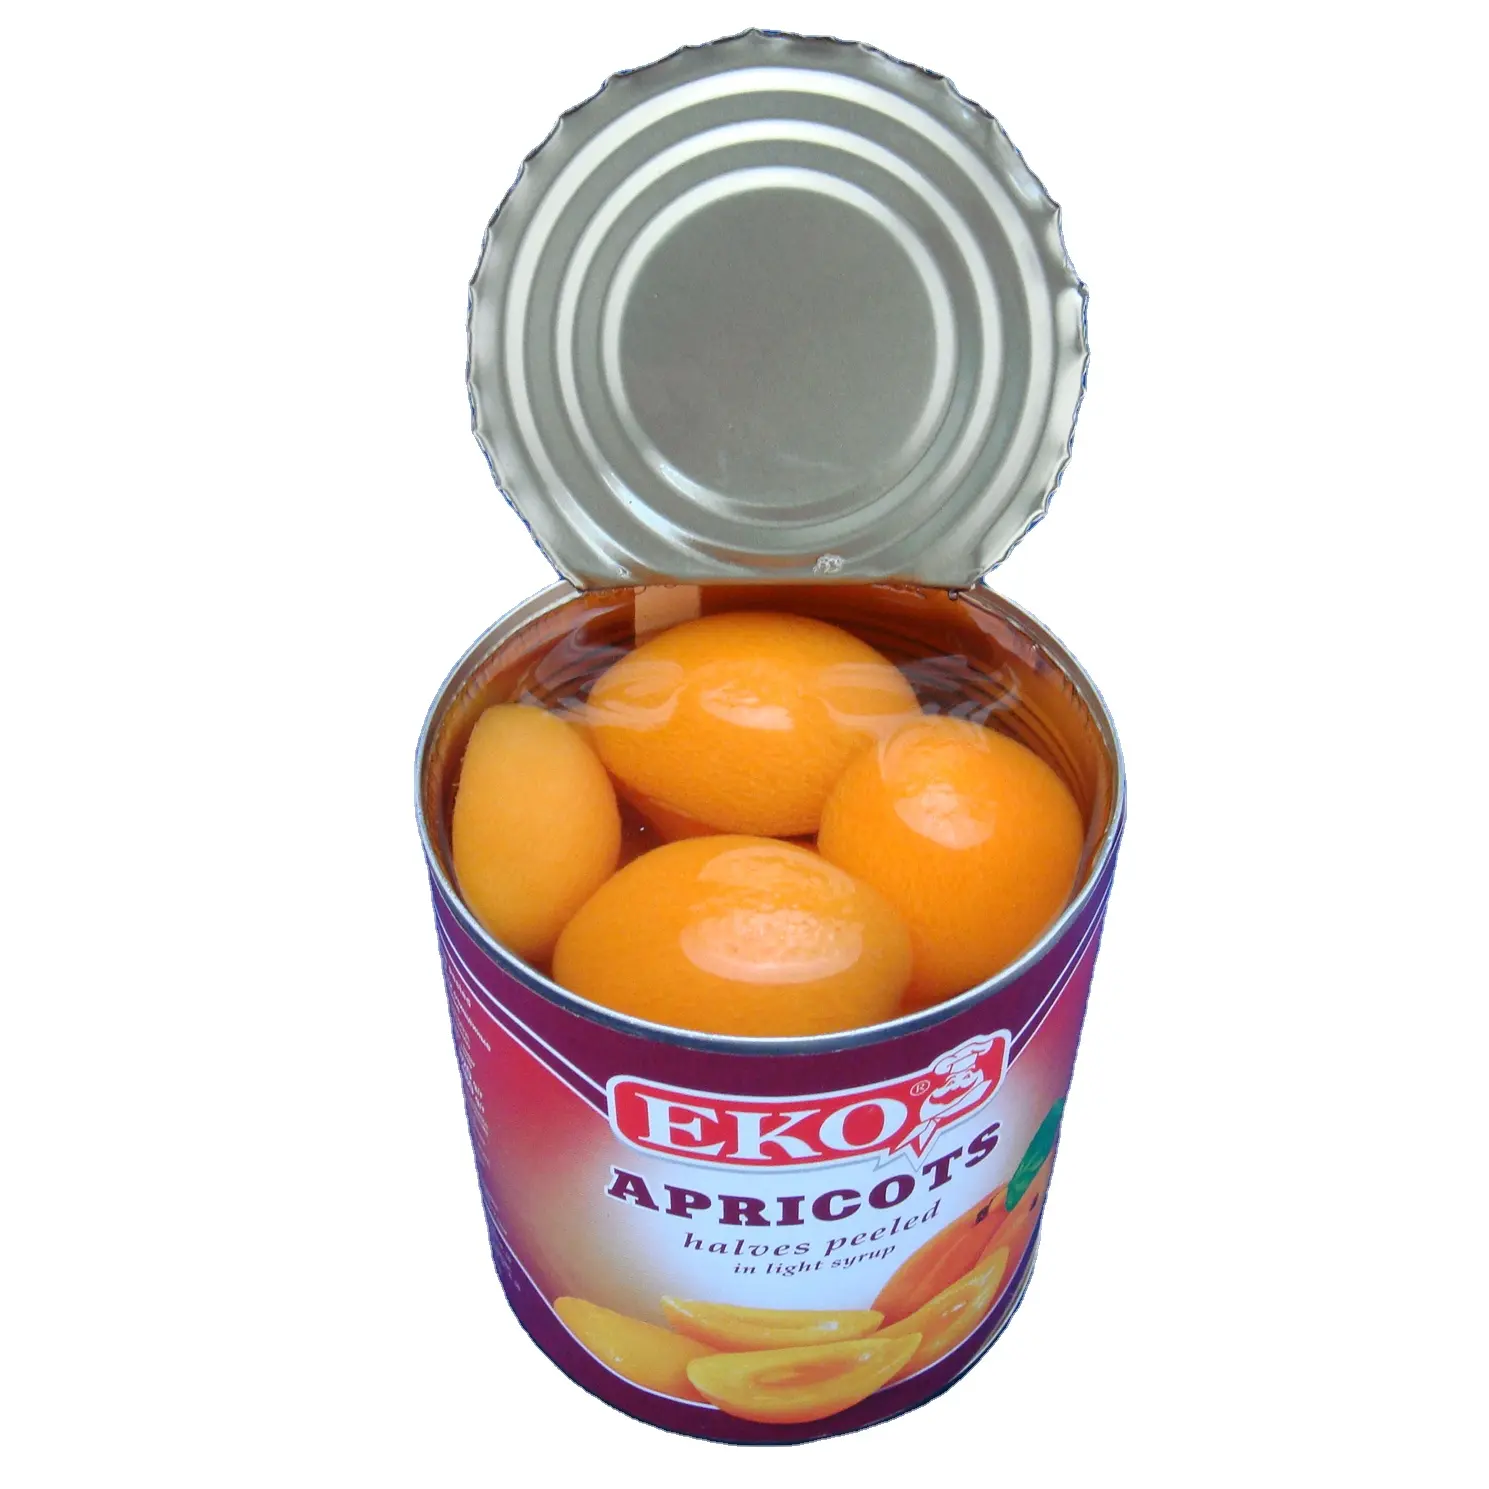 Консервированные абрикосовые половинки в легком сиропе по низкой цене от производителя консервированных продуктов